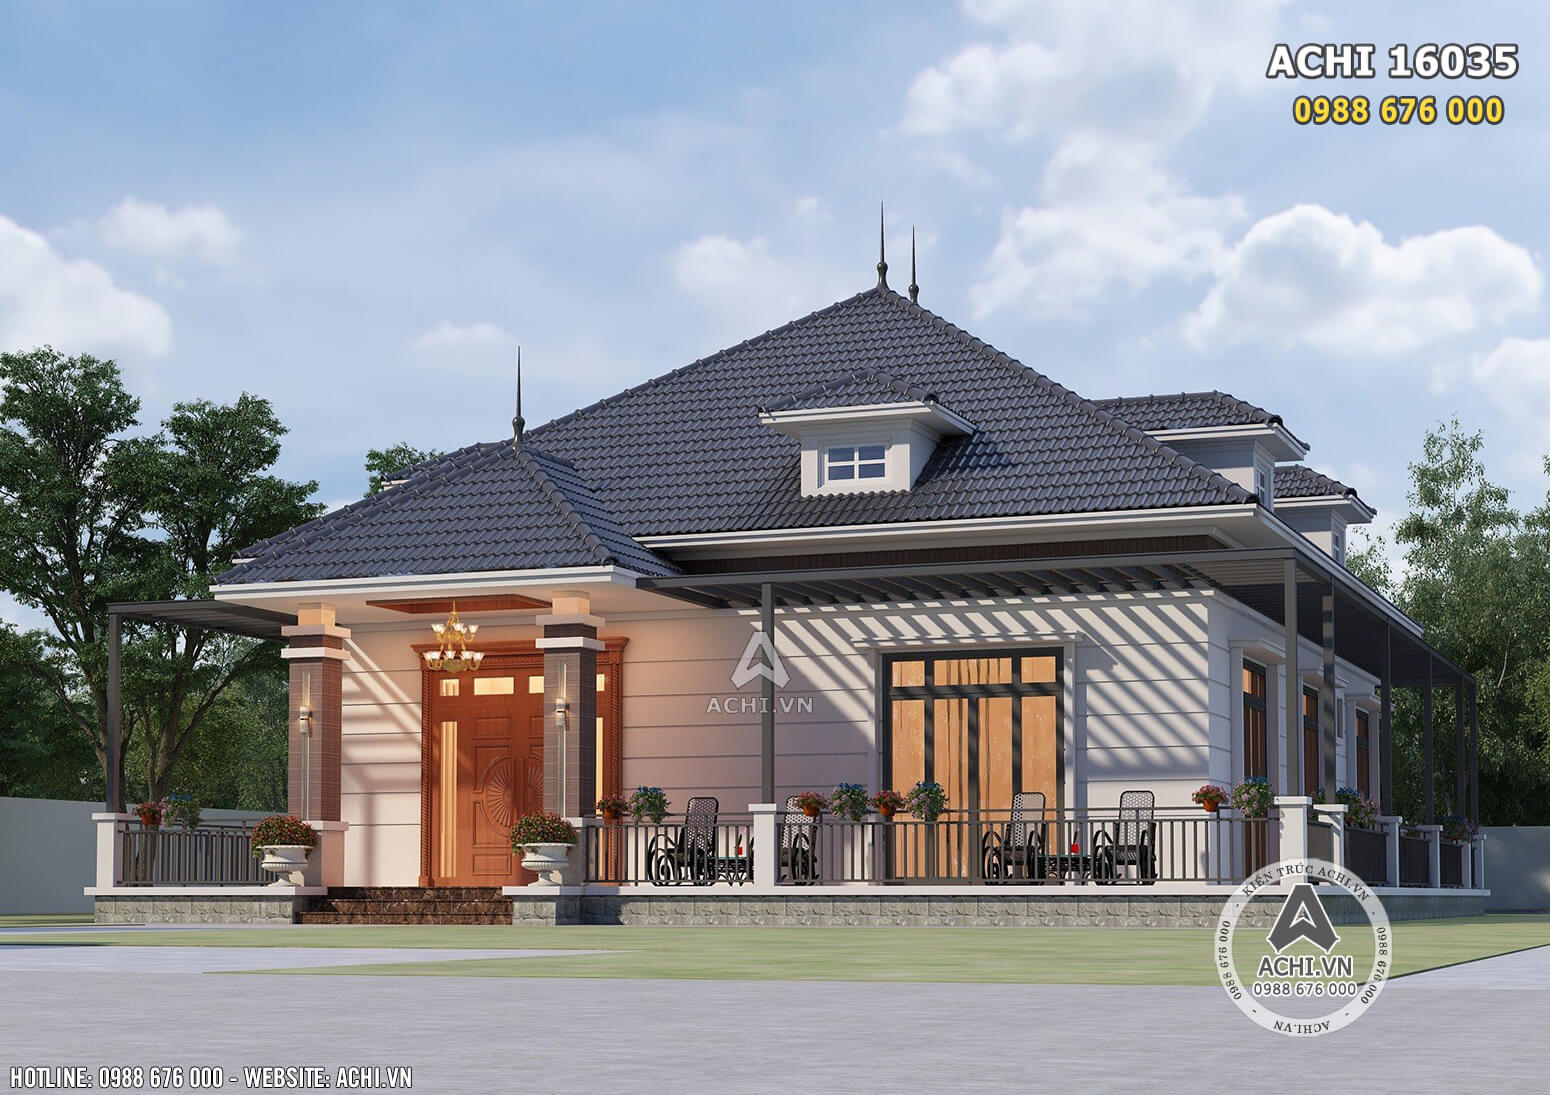 Phối cảnh 3D ngoại thất mẫu thiết kế nhà mái nhật 1 tầng hiện đại